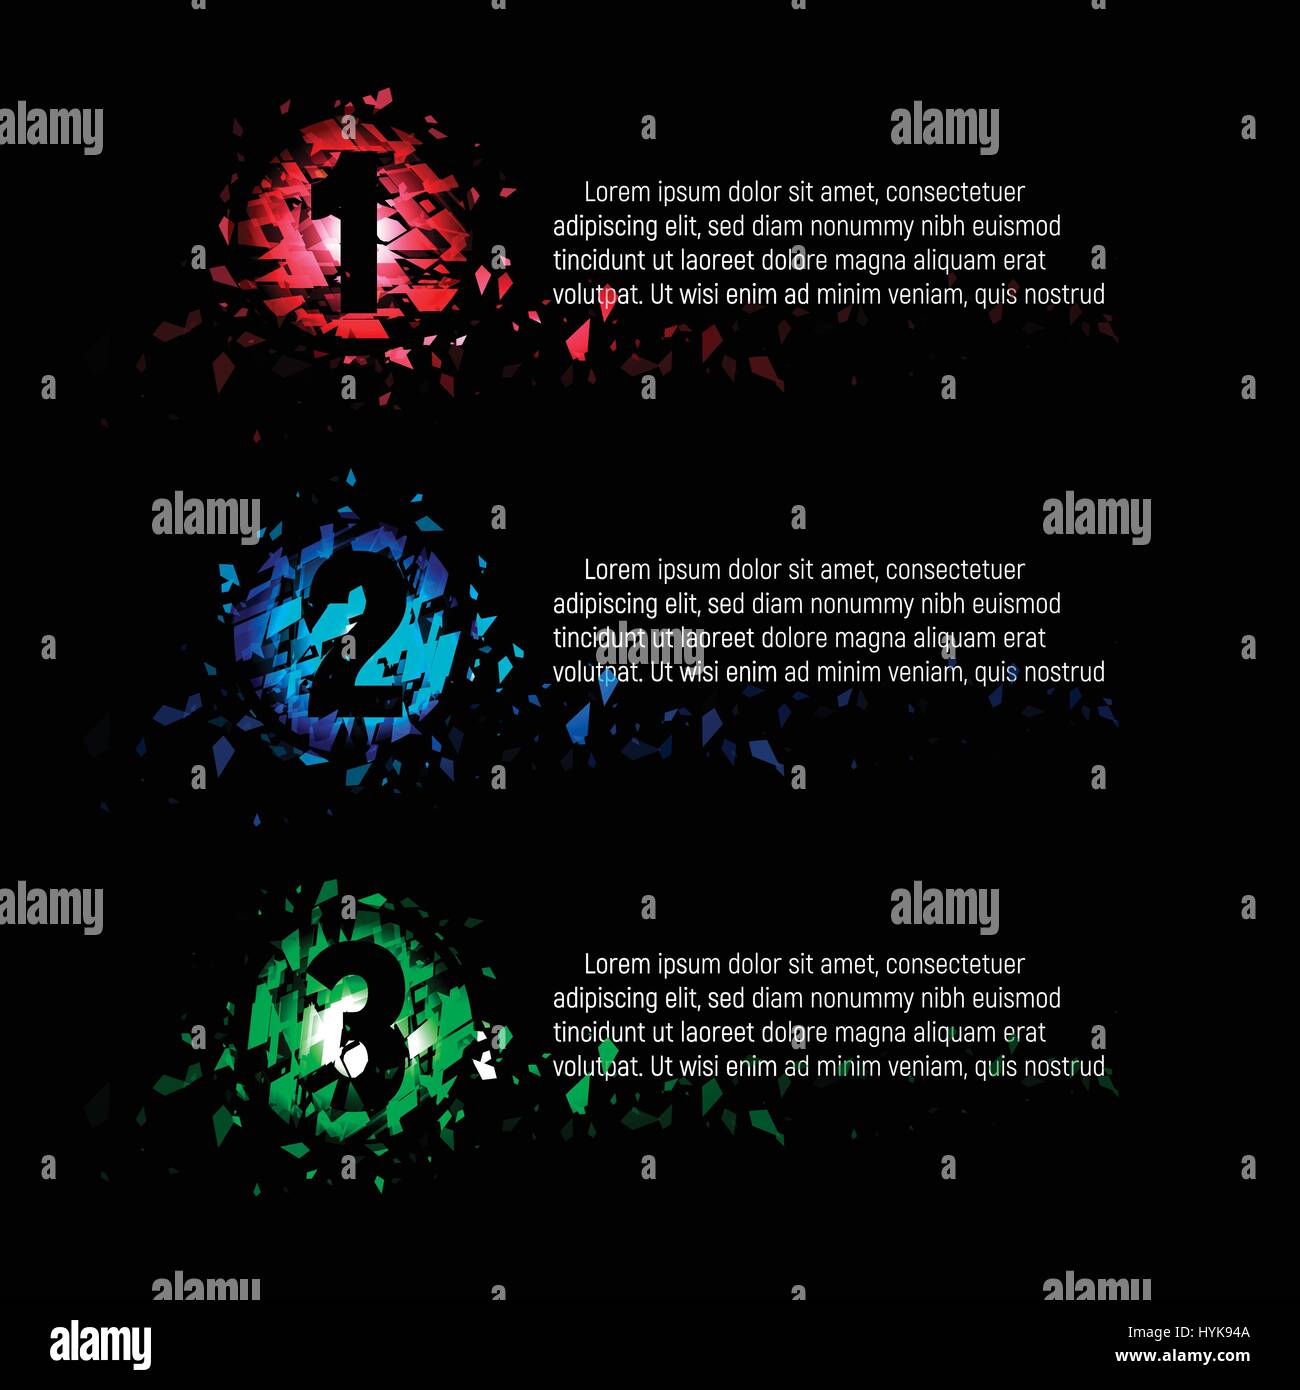 Isolierte abstrakt bunt Runde Symbolnummern 1,2,3 von Glasscherben mit Text auf schwarzem Hintergrund, Menü-Elemente-Präsentation-Vektor-illustration Stock Vektor